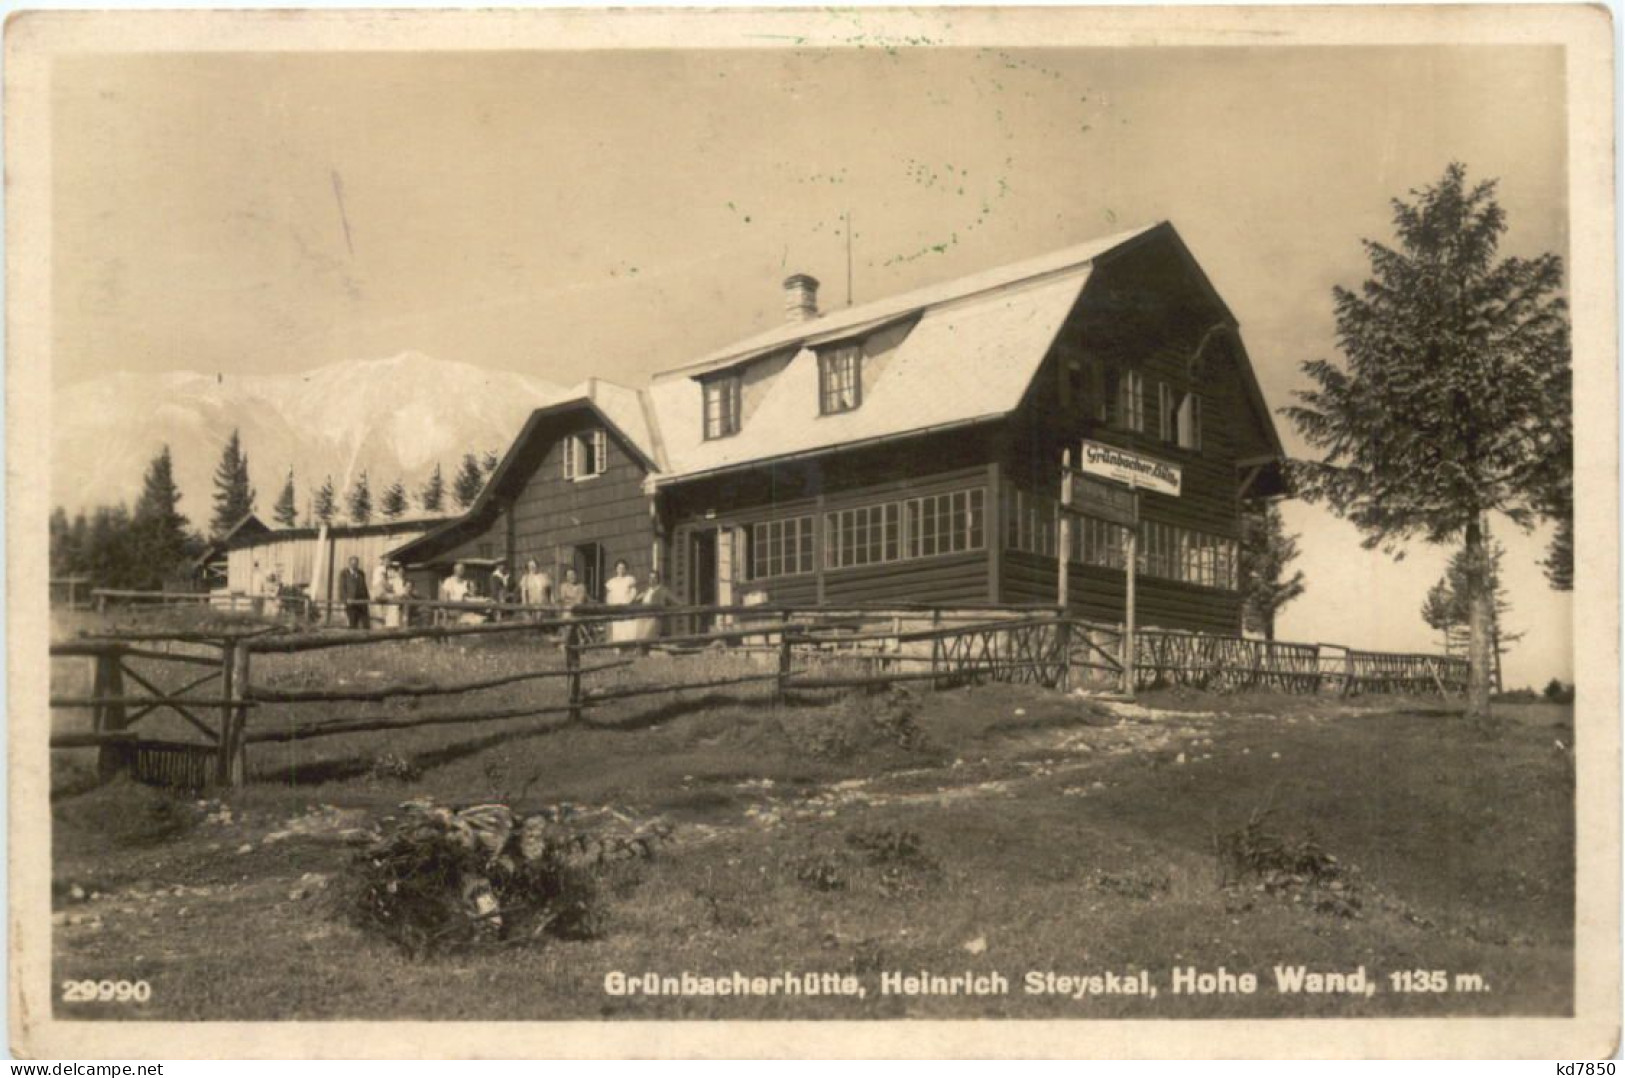 Grünbacherhütte - Hohe Wand - Wiener Neustadt